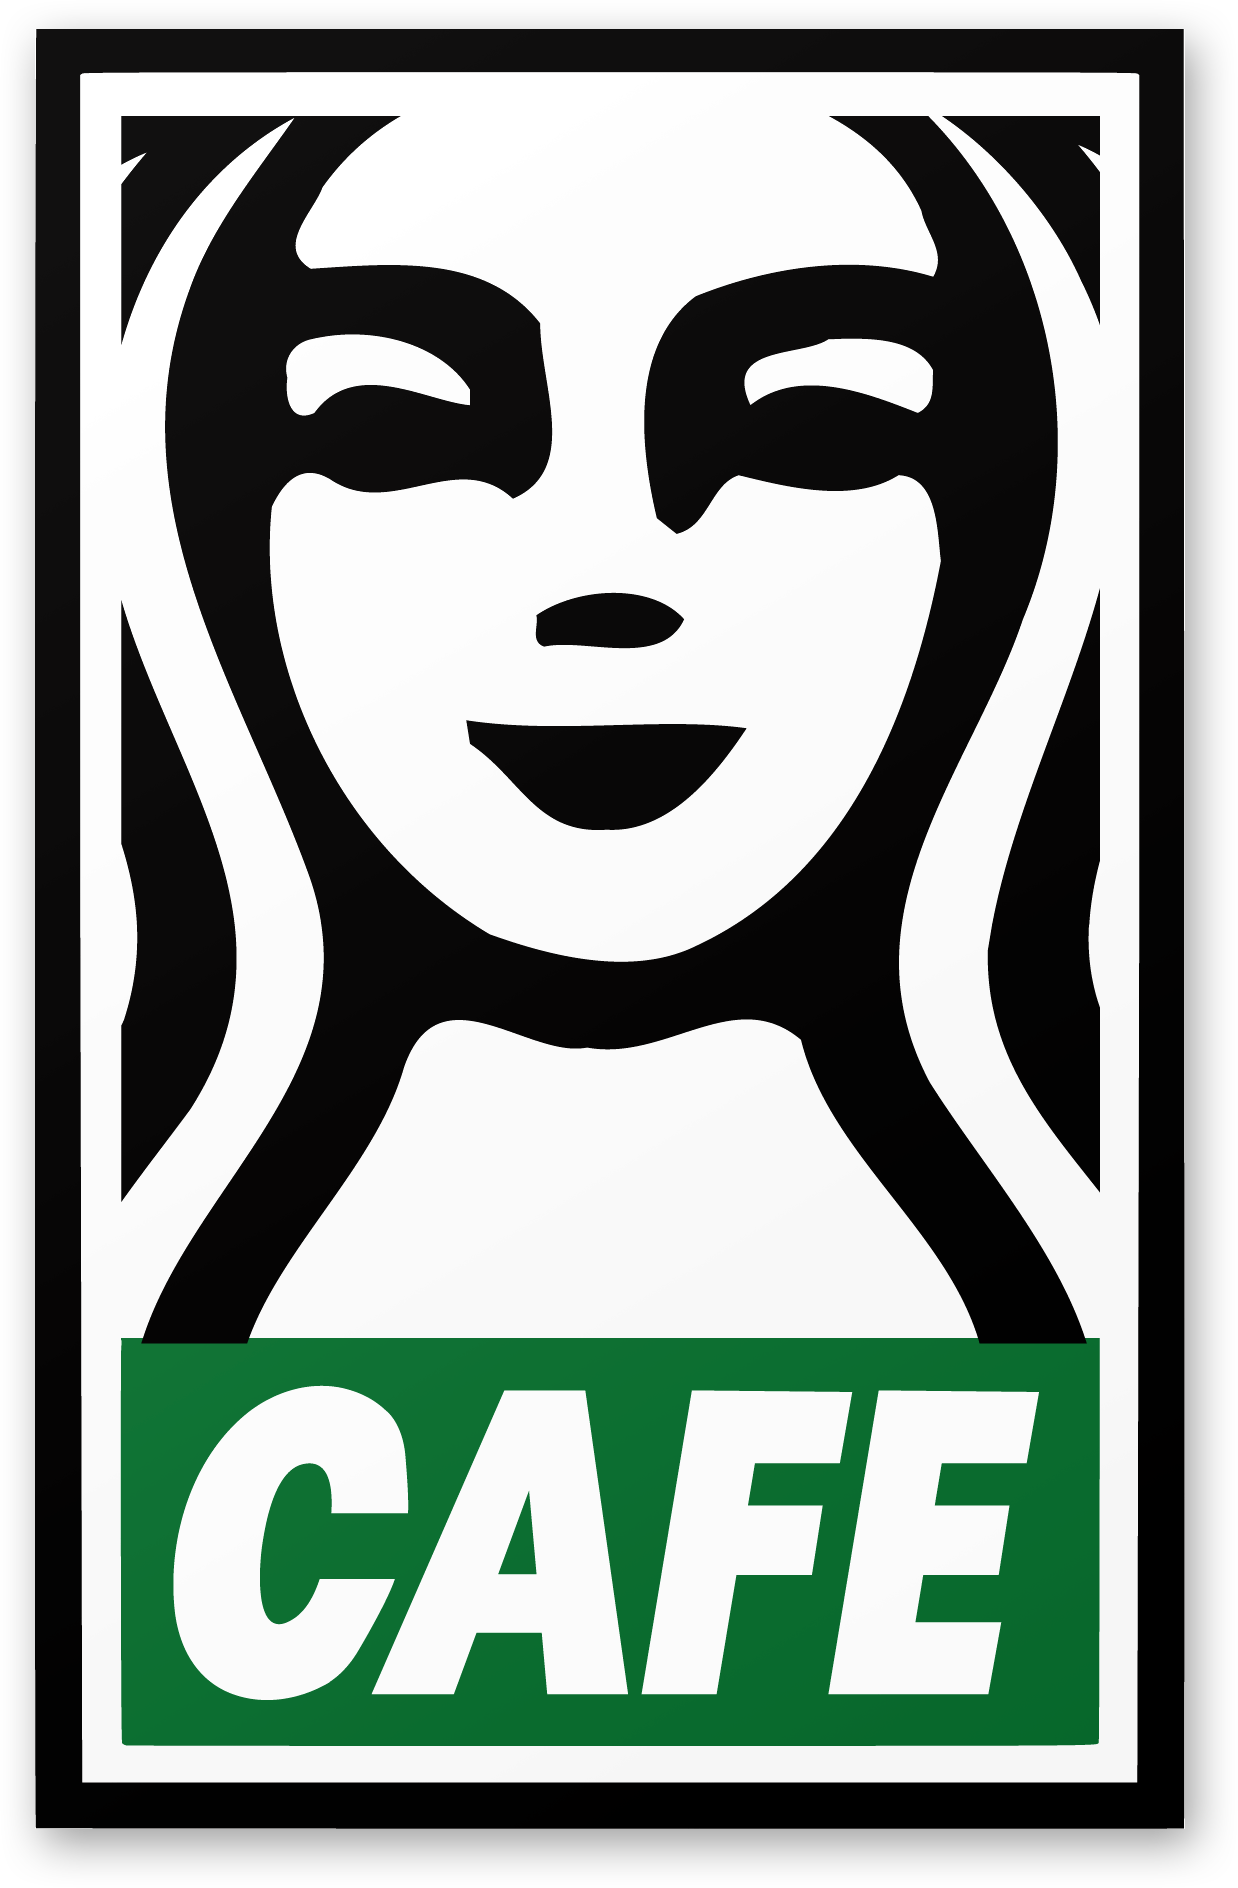 Medium Starbucks Logo - The Fraternity of Starbucks — Steve Lovelace